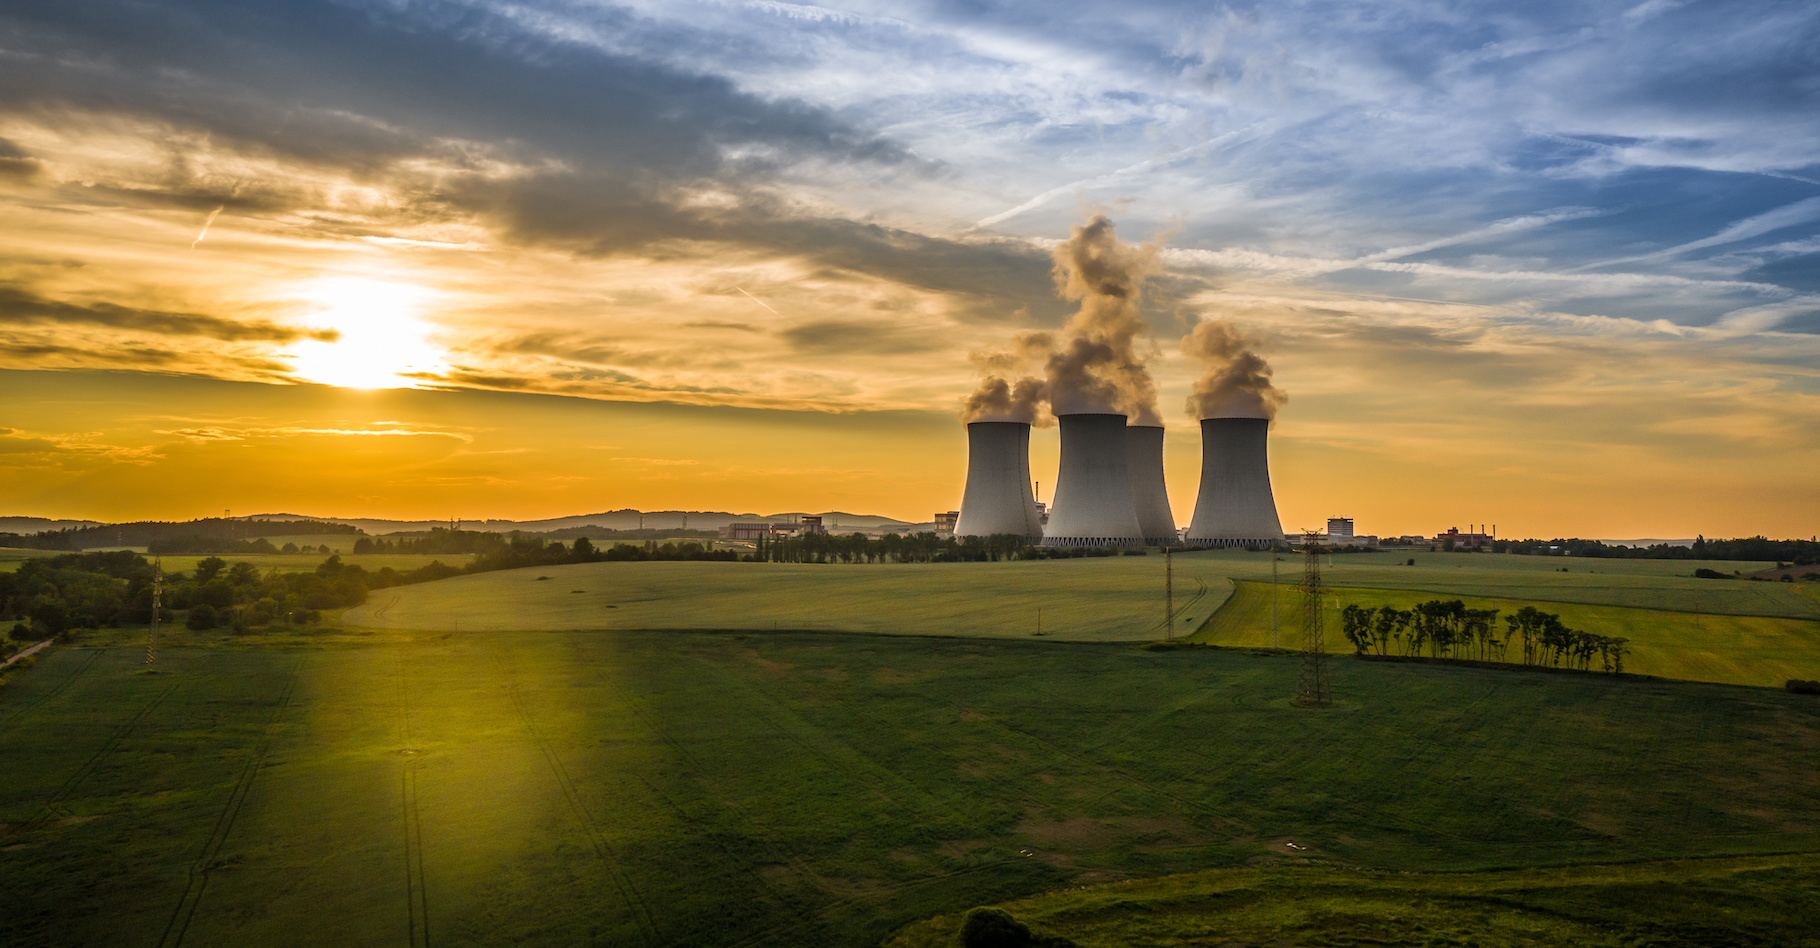 Des chercheurs estiment que le nucléaire pourrait subvenir à tous nos besoins énergétiques de 2050 en occupant moins de la moitié de la surface de la Belgique. © Marek, Adobe Stock